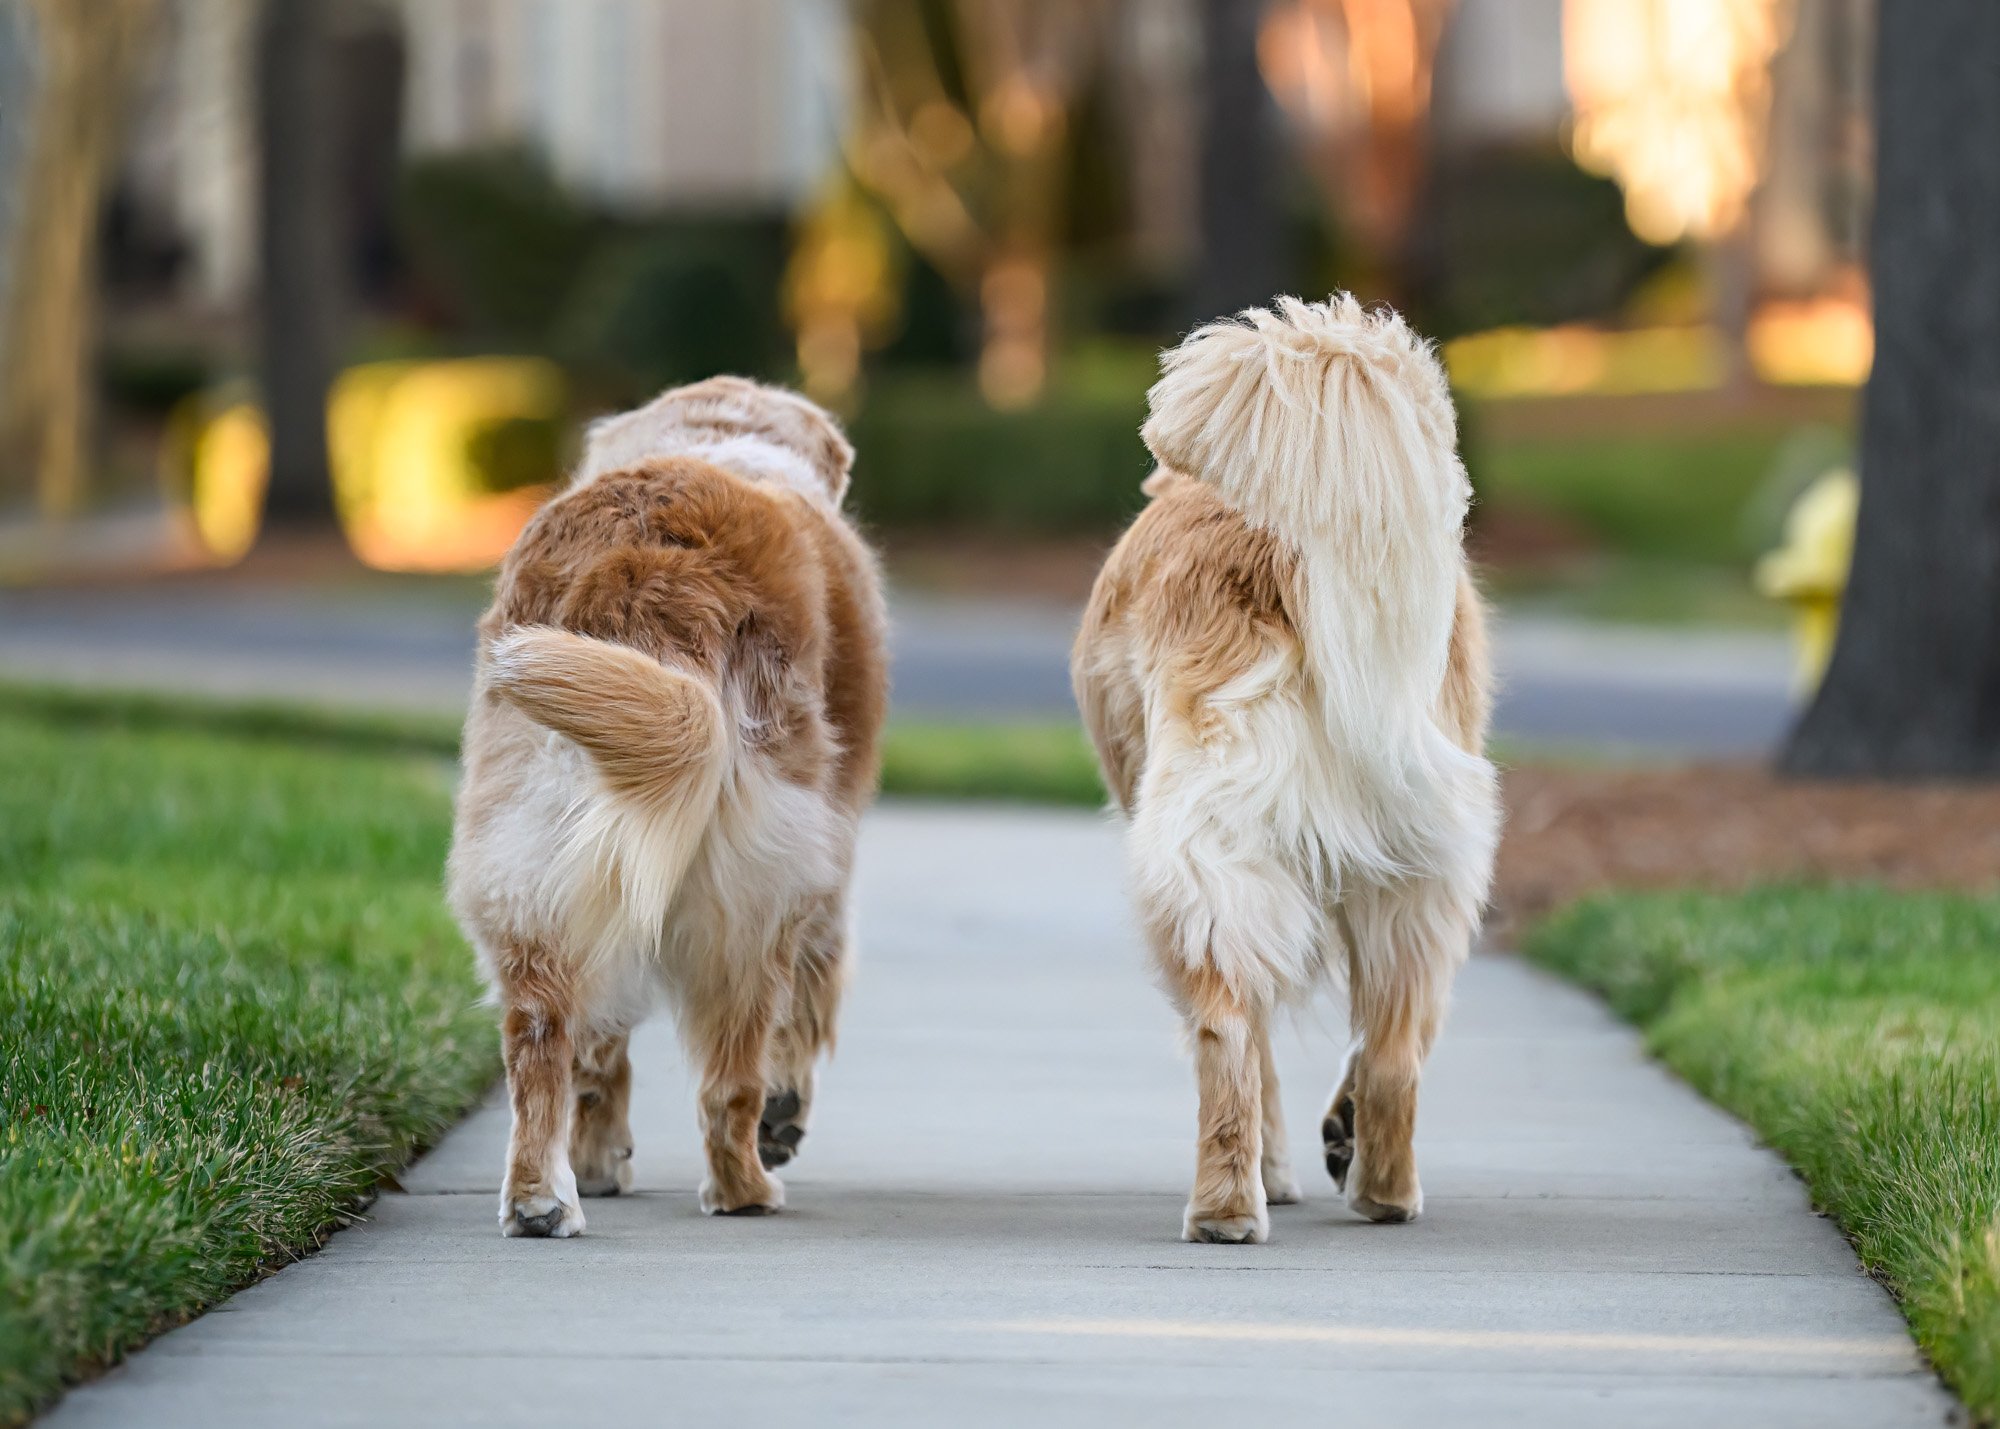 two dogs walking down sidewalk